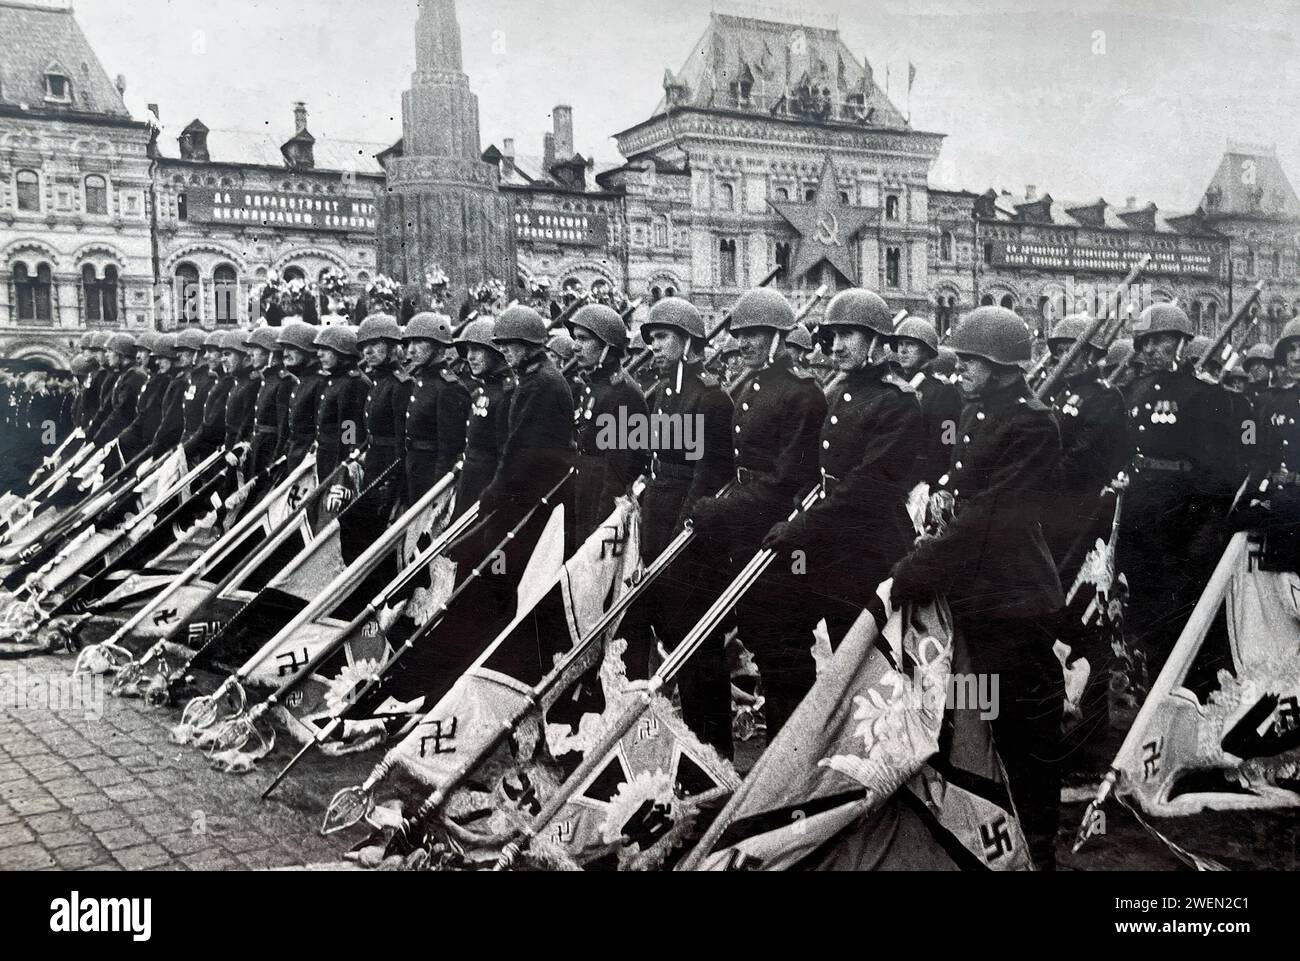 SIEGESPARADE DER ROTEN ARMEE auf dem Roten Platz, Moskau, 24. Juni 1945. Russische Soldaten, die auf dem Vormarsch sind, haben die Standards der deutschen Einheit erfasst. Stockfoto